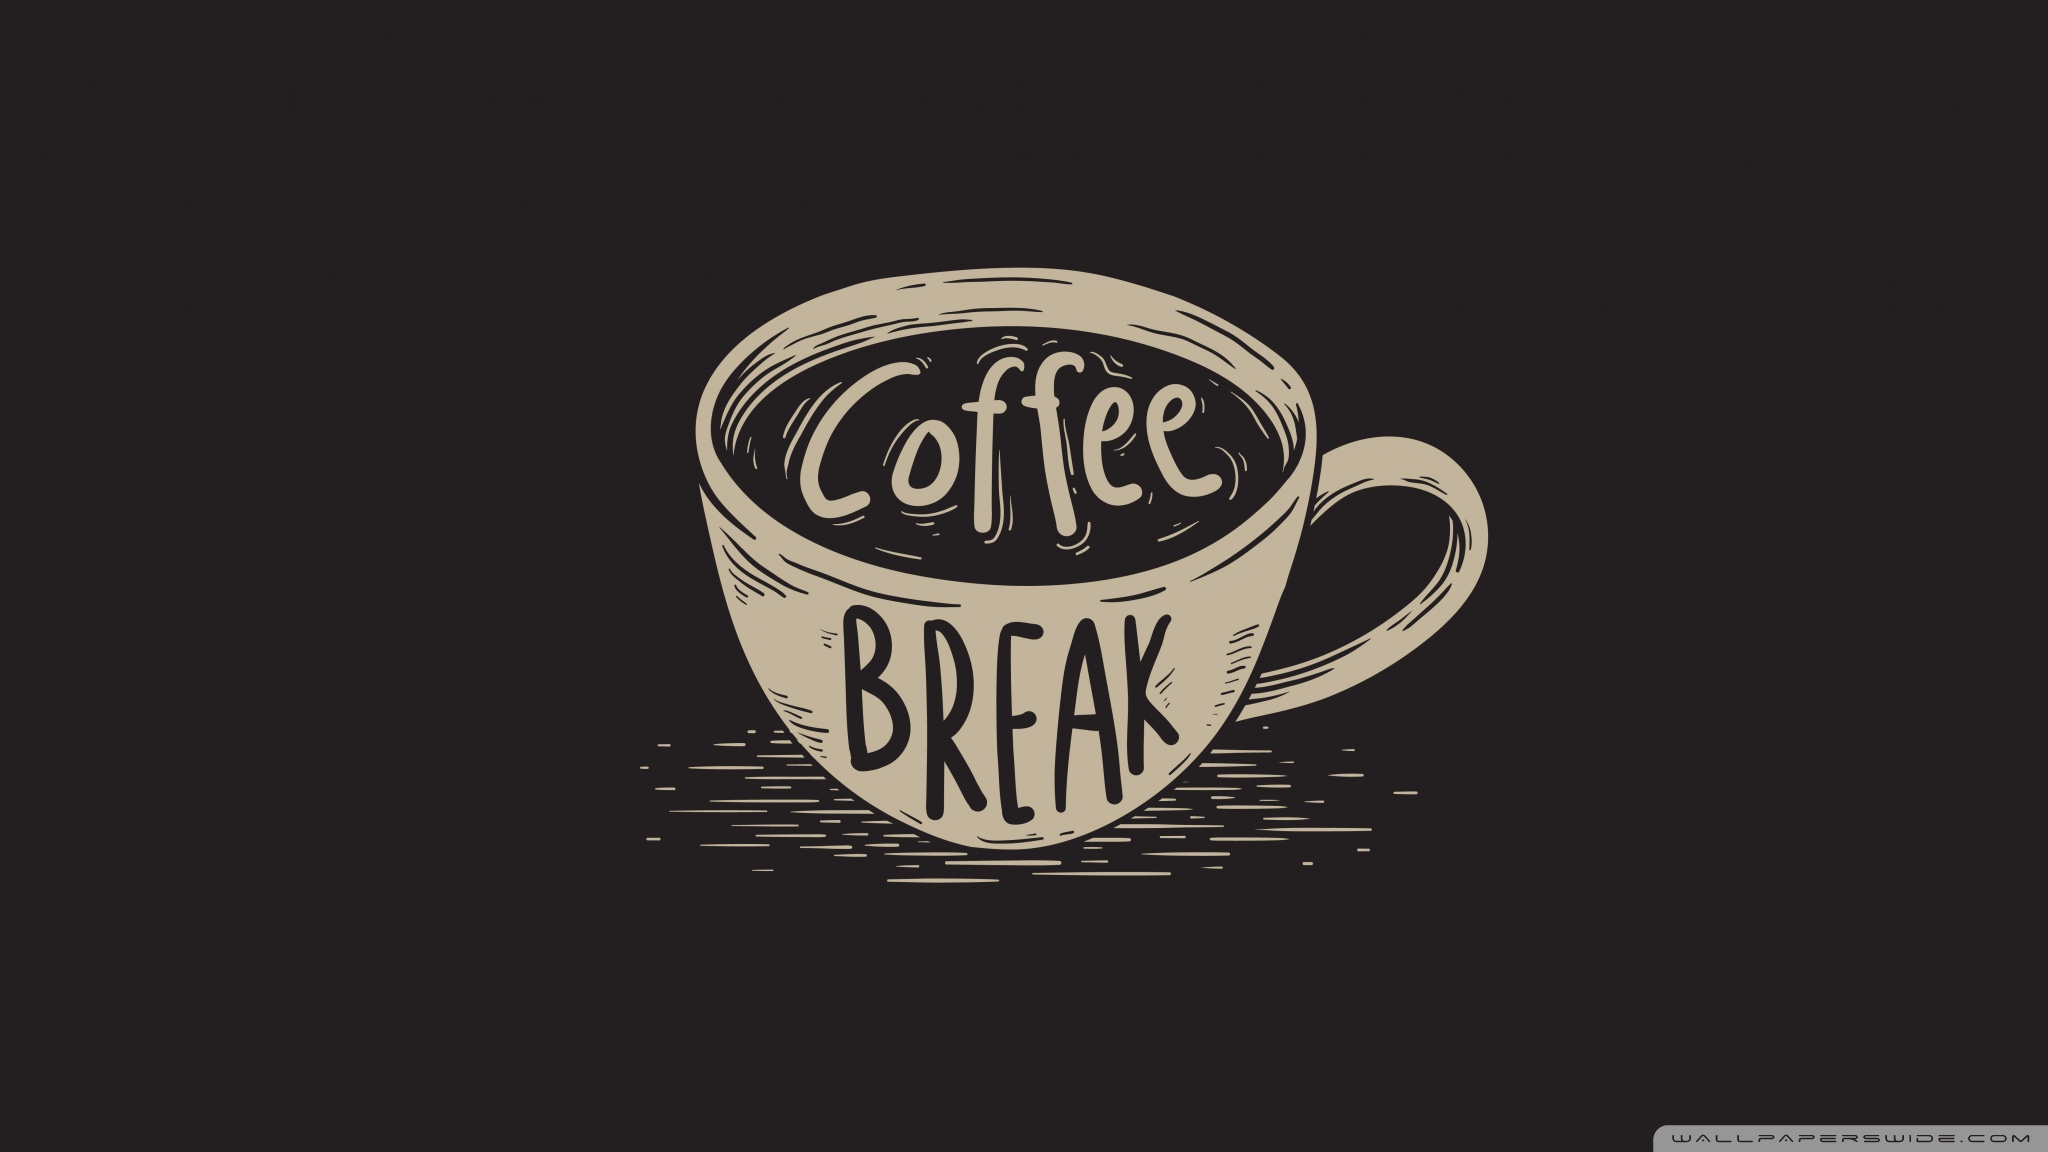 Coffee Break Ultra Hd Desktop Background Wallpaper For